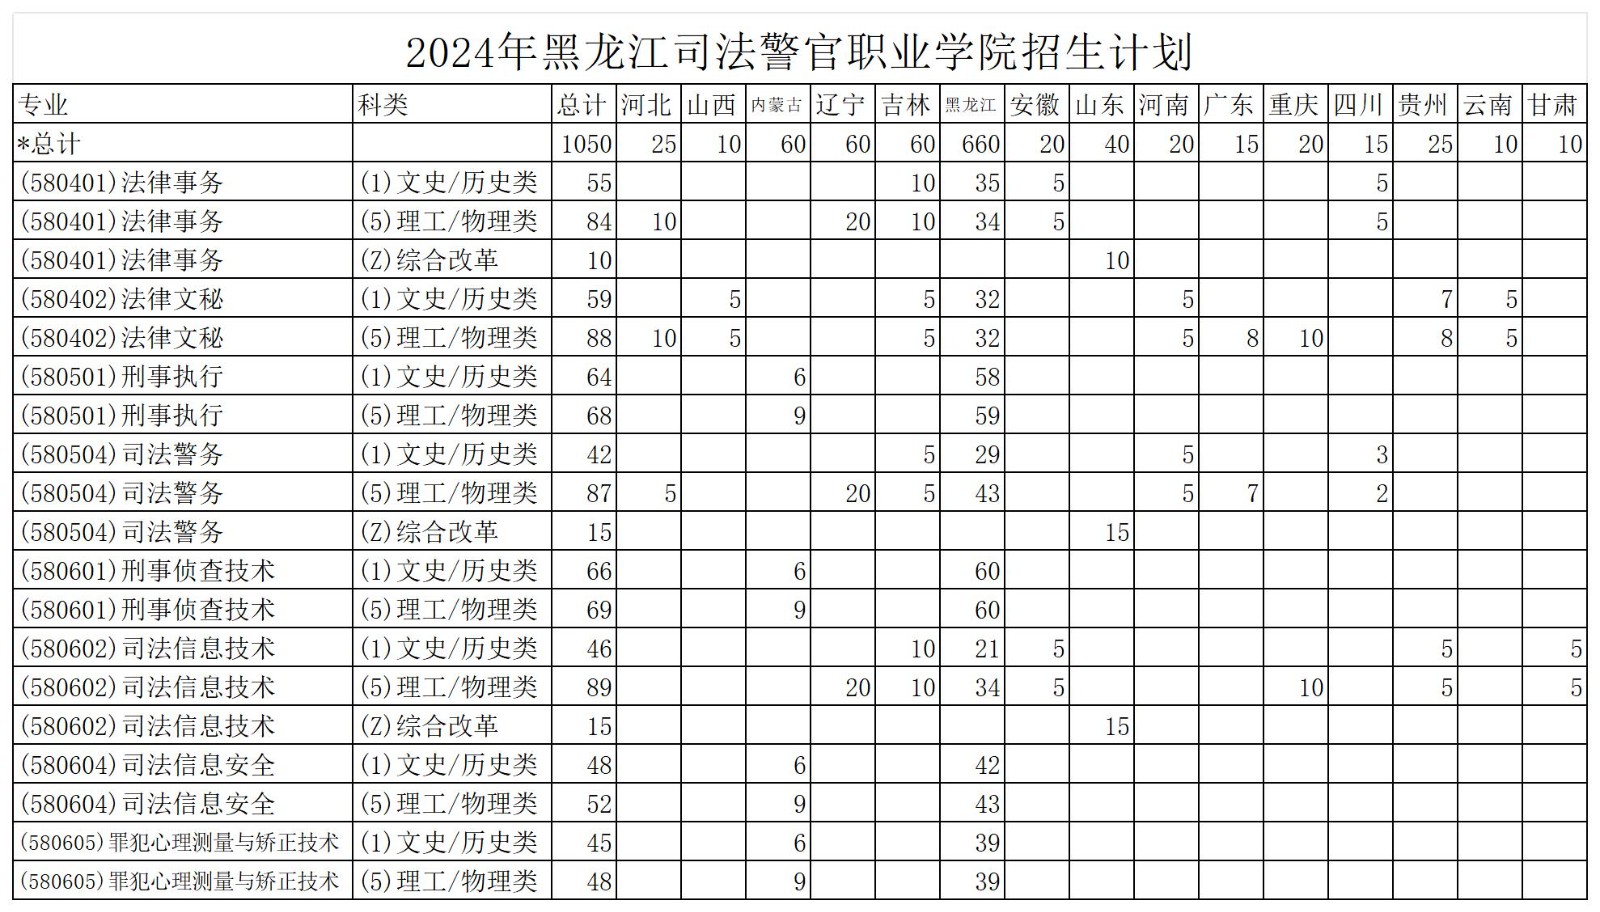 2024年来源计划综合统计表_2024年来源计划综合统计表.jpg